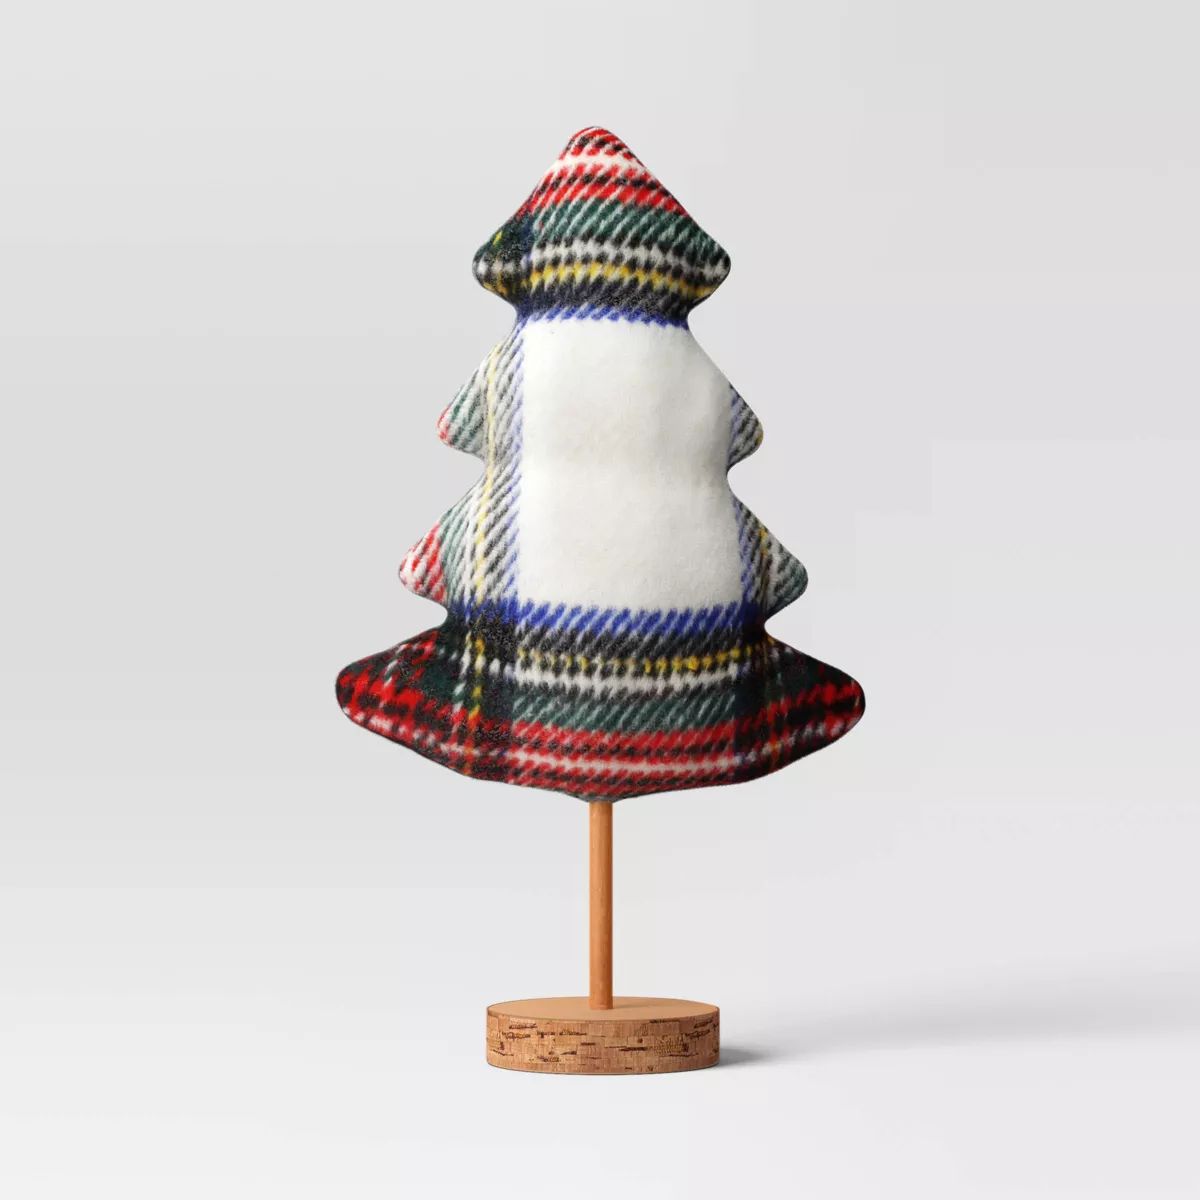 12" Plaid Fabric Christmas Tree with Wood Base Figurine - Wondershop™ | Target